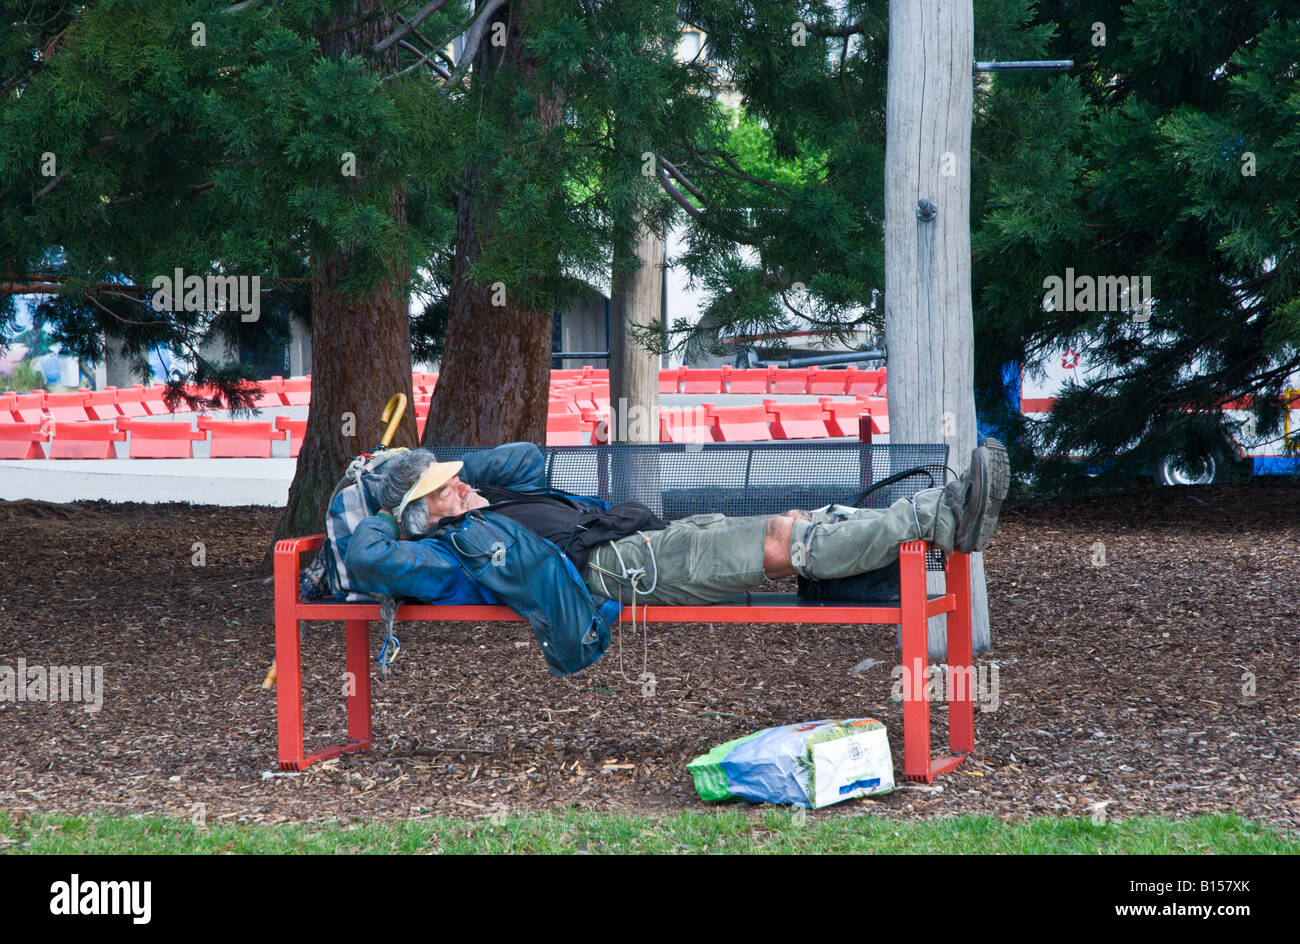 Obdachloser schlafen auf einer Parkbank, Neuchatel, Schweiz Stockfotografie  - Alamy